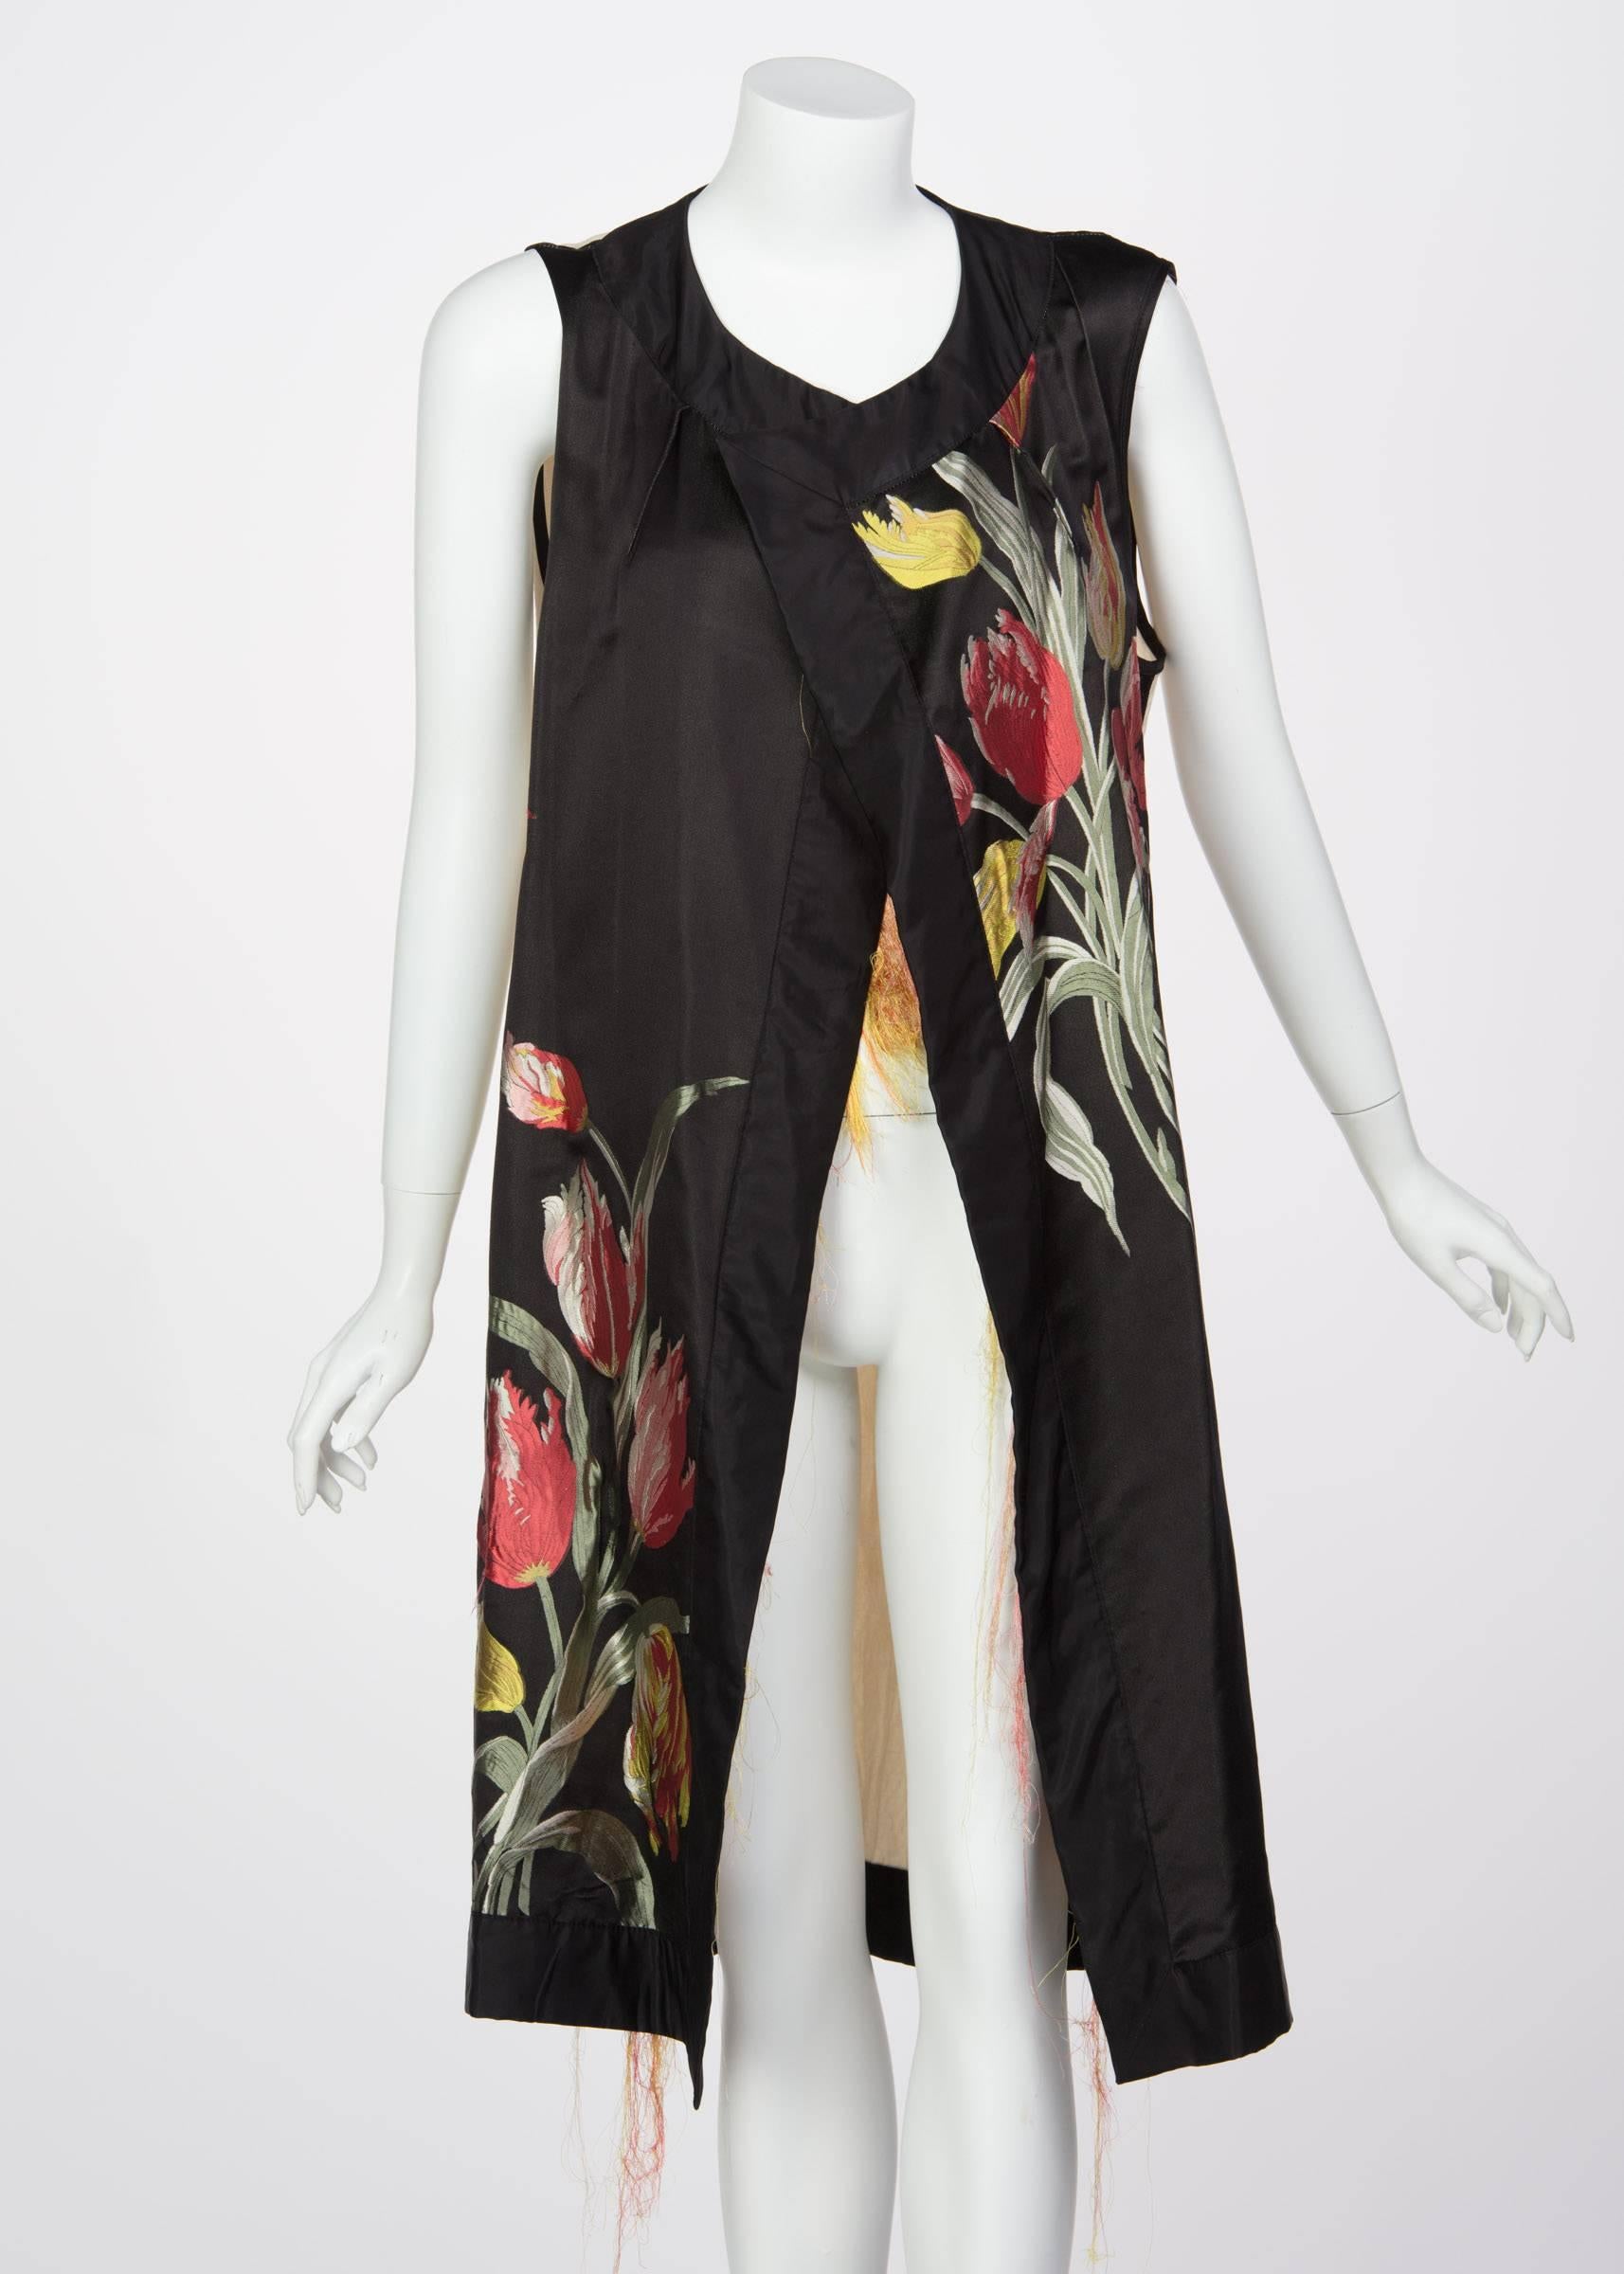 Dries Van Noten Spring Runway Look 30 Silk Thread Floral Brocade Vest, 2014  In Excellent Condition For Sale In Boca Raton, FL